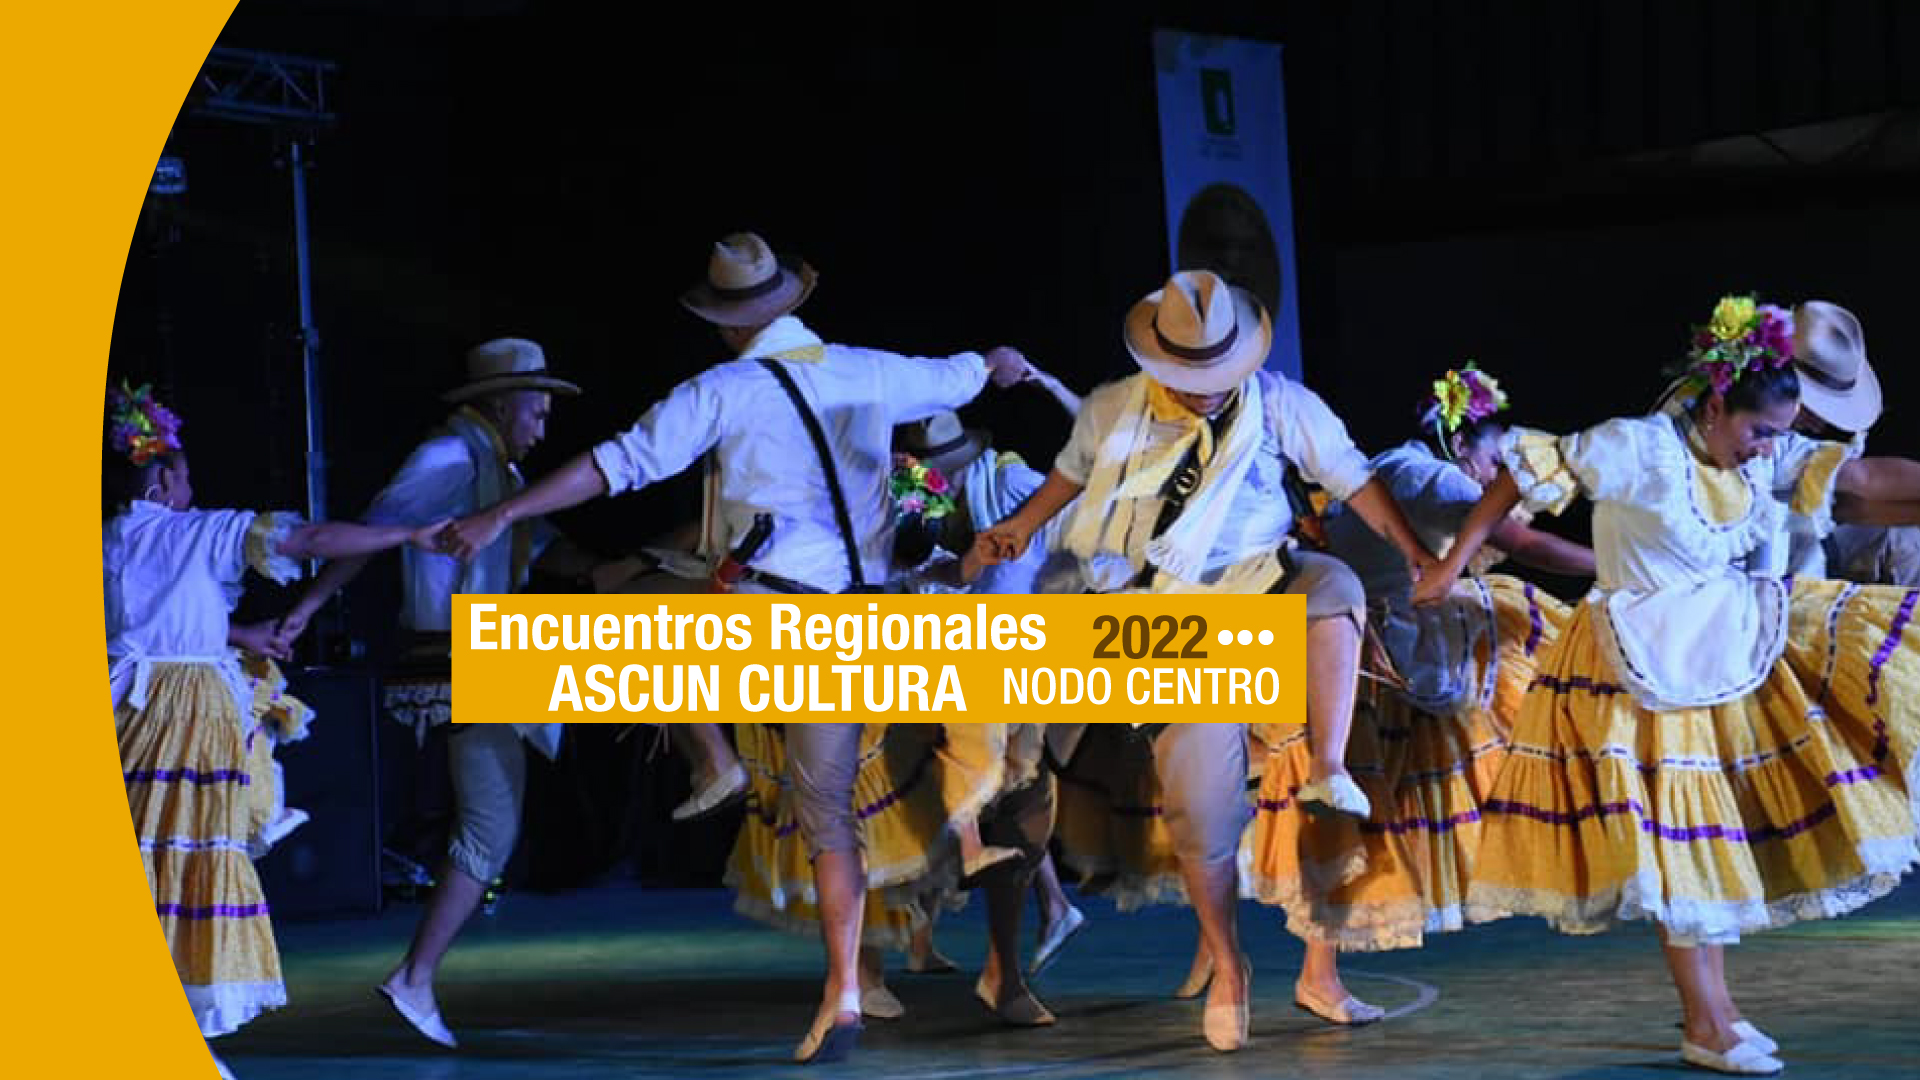 Encuentros Regionales de Cultura ASCUN Nodo Centro 2022